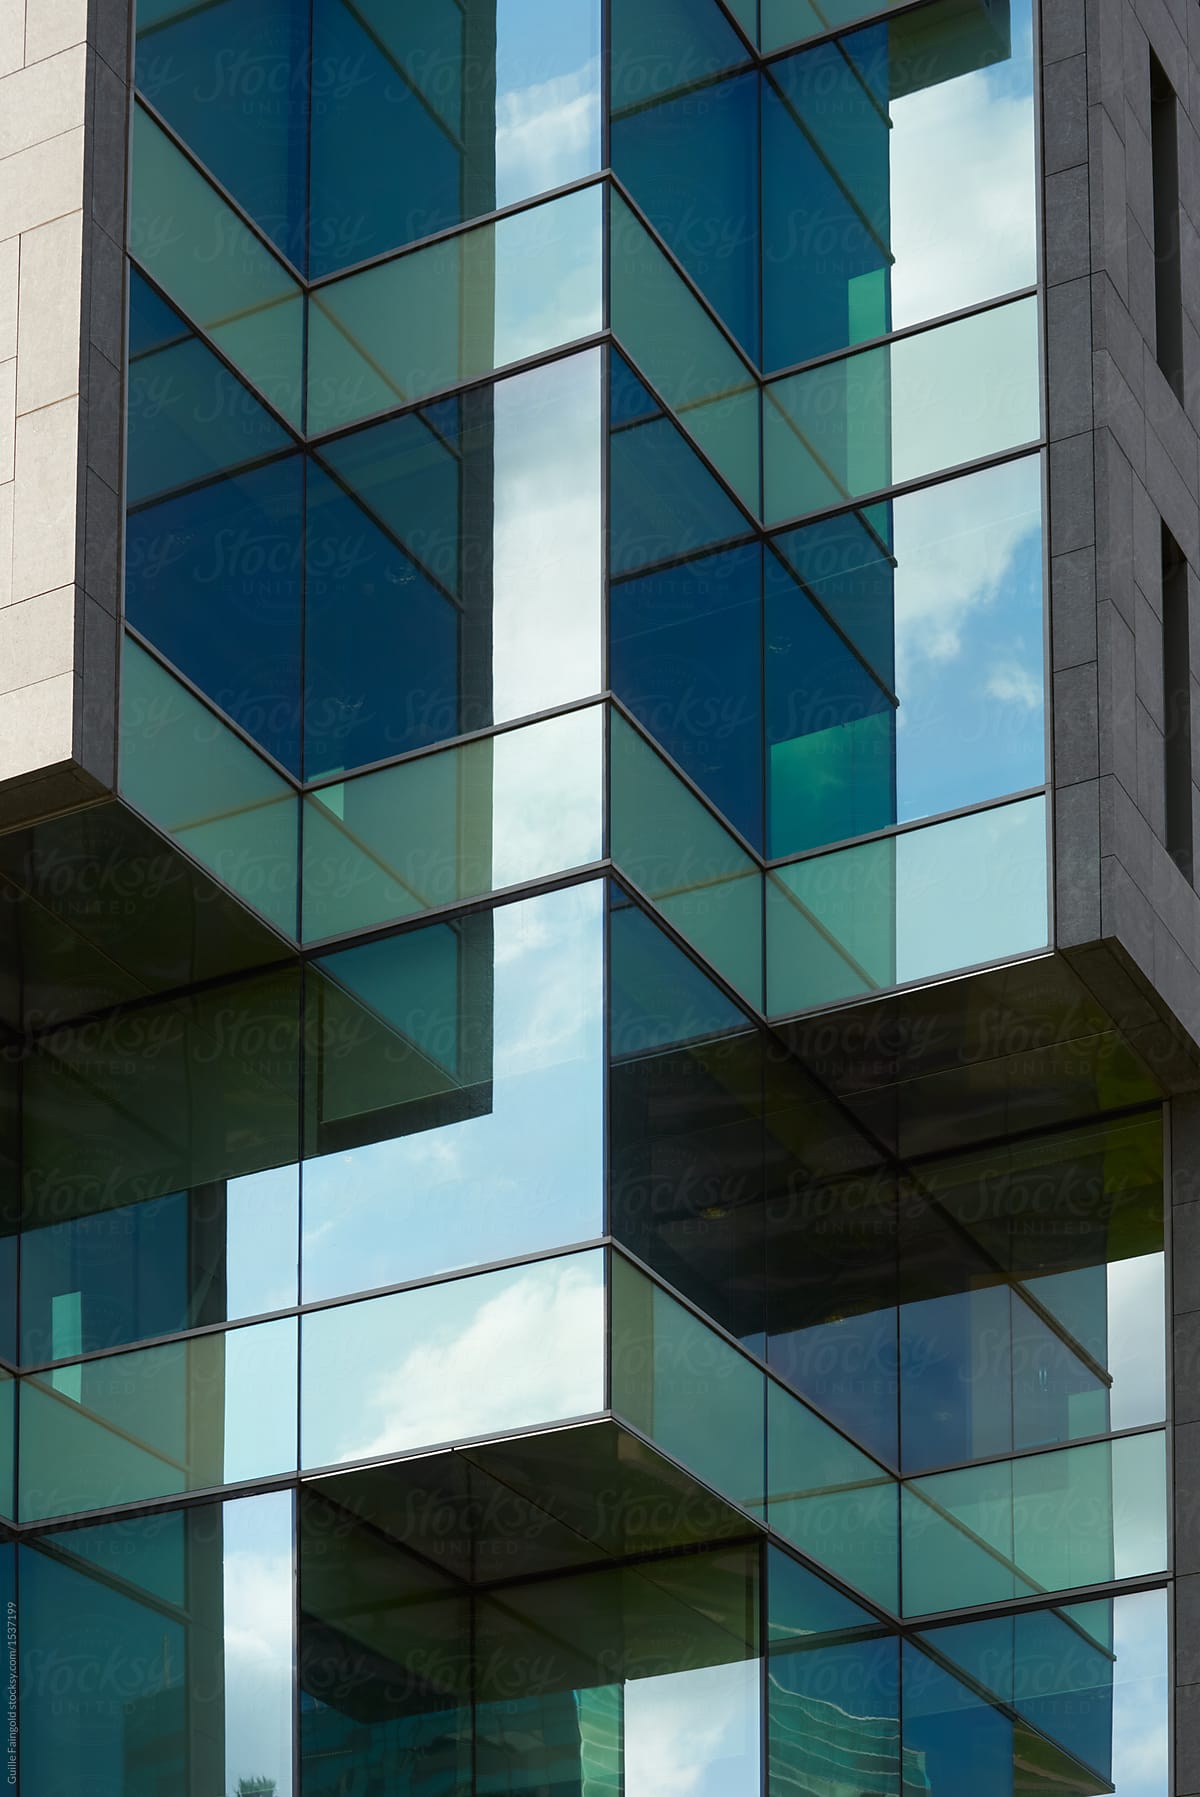 Close-up of glass building exterior.